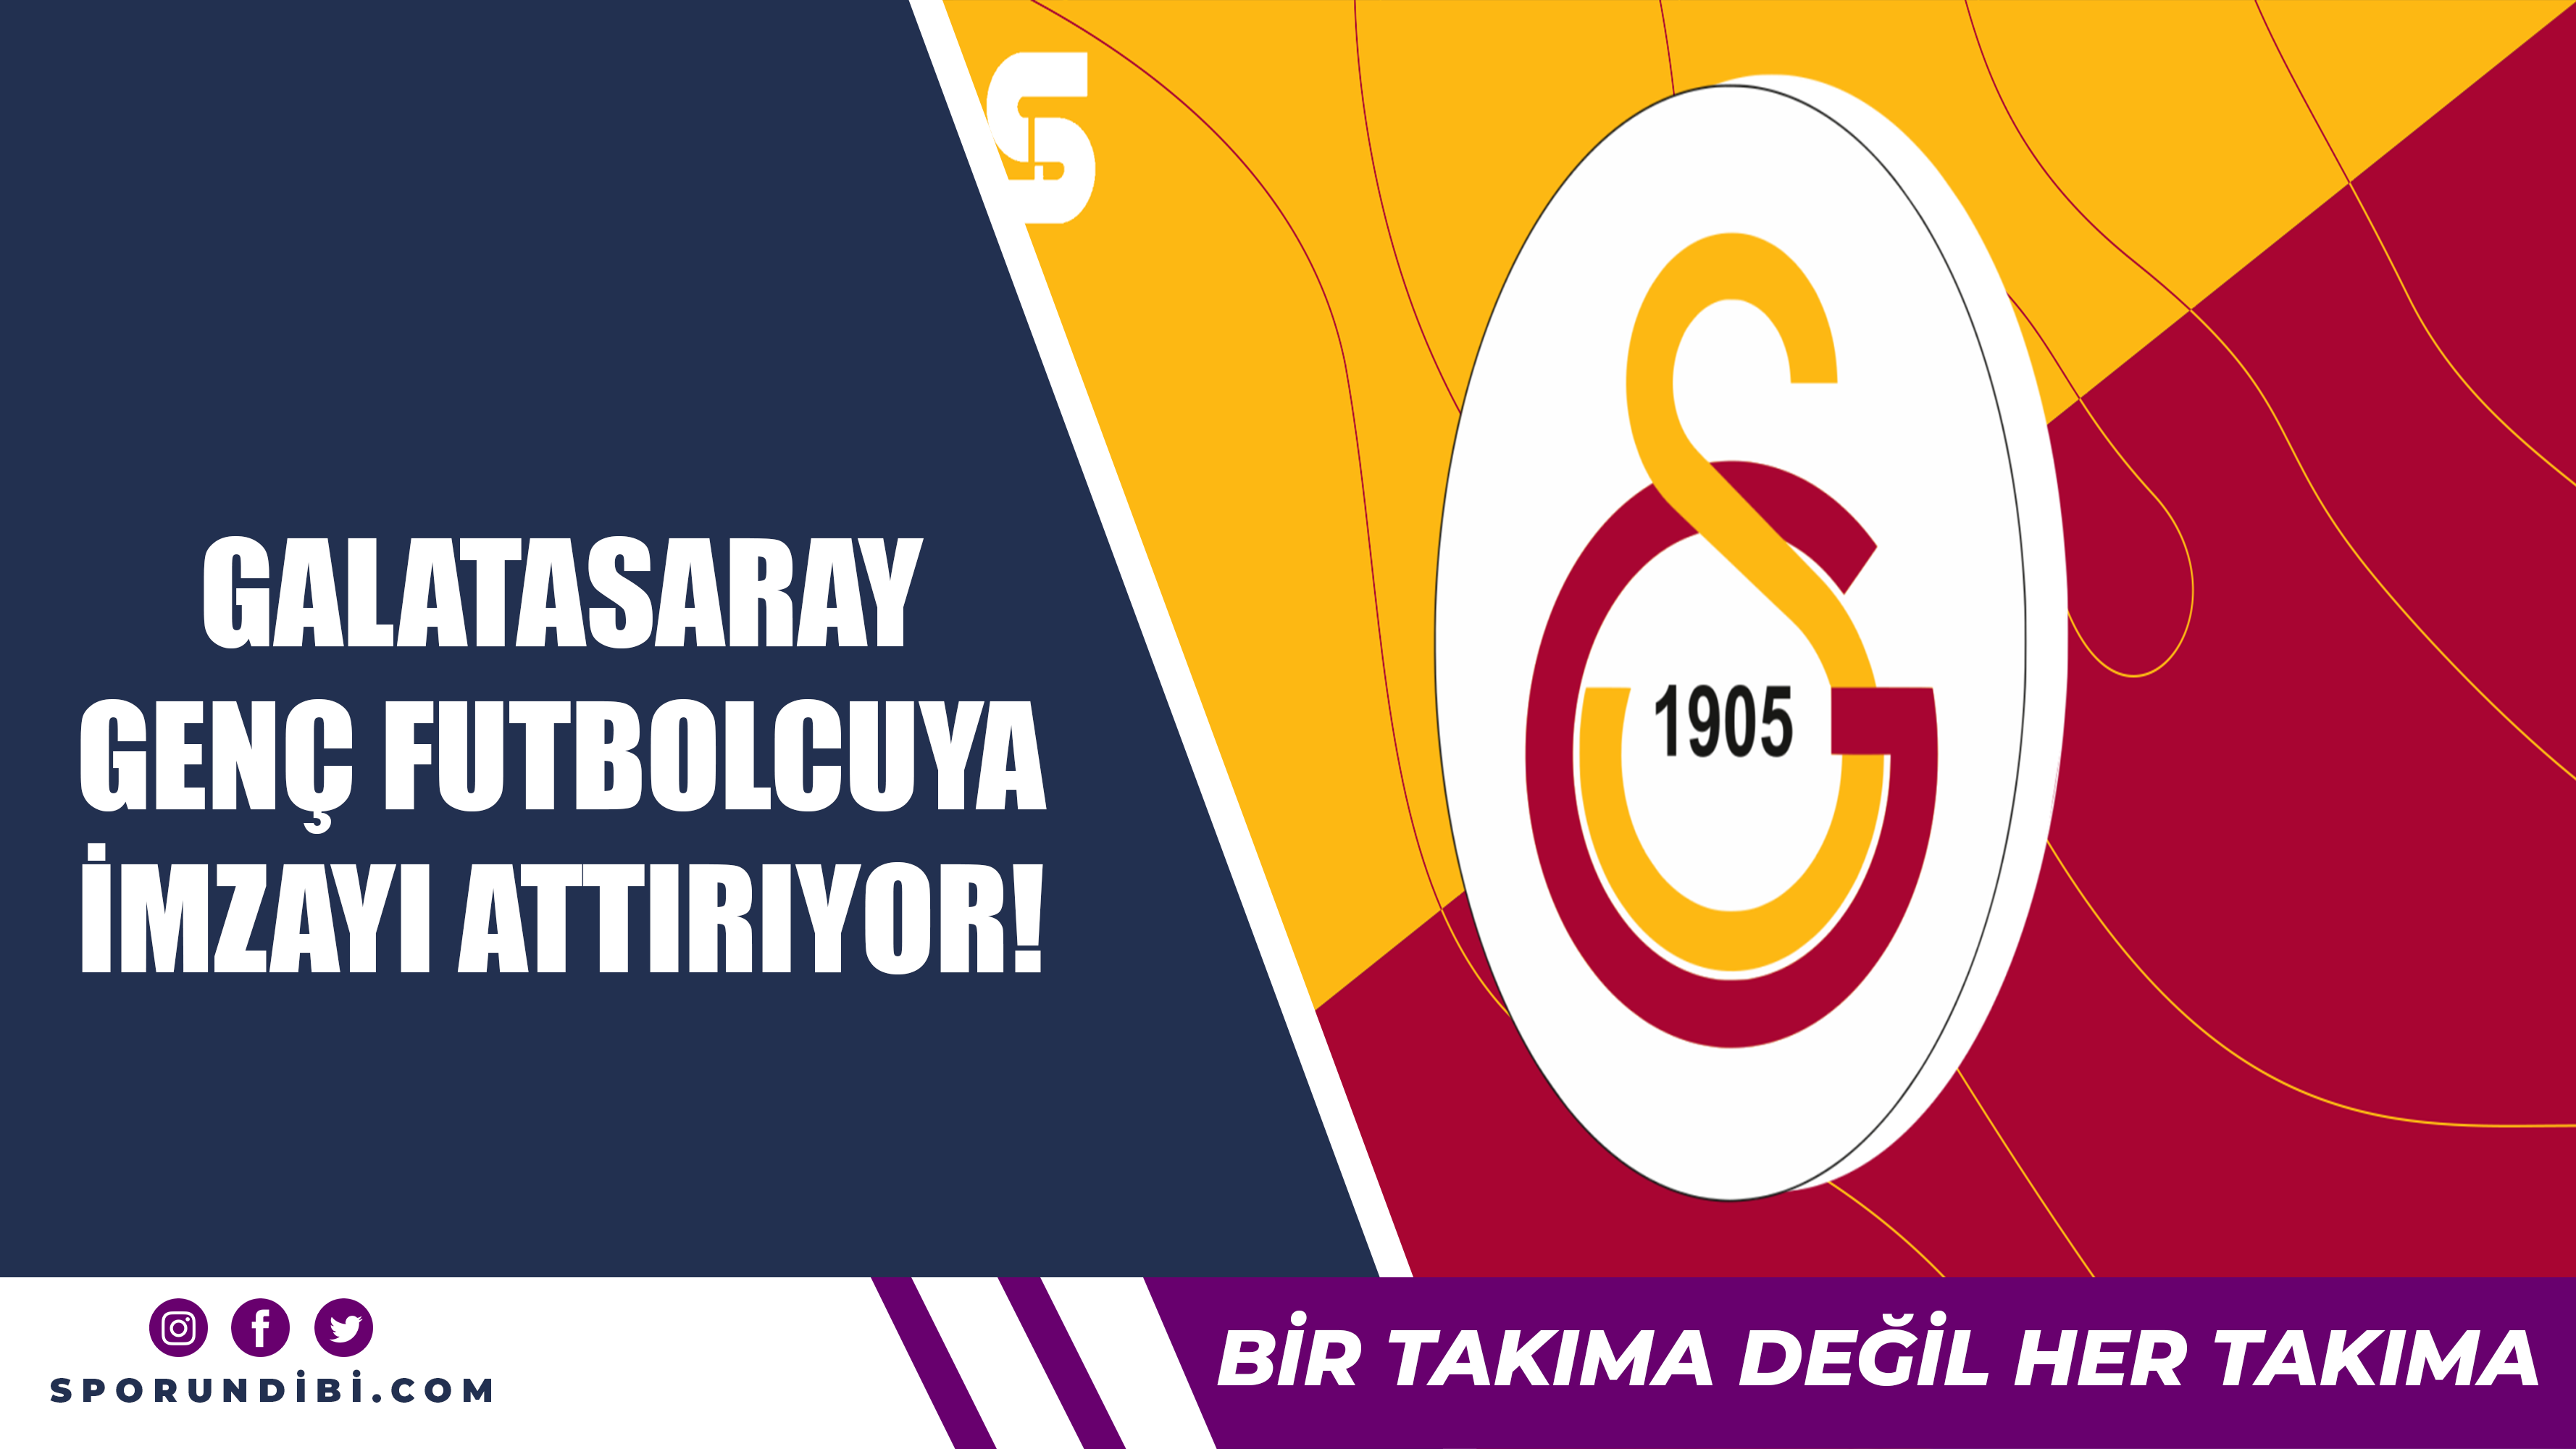 Galatasaray genç futbolcuya imzayı attırıyor!